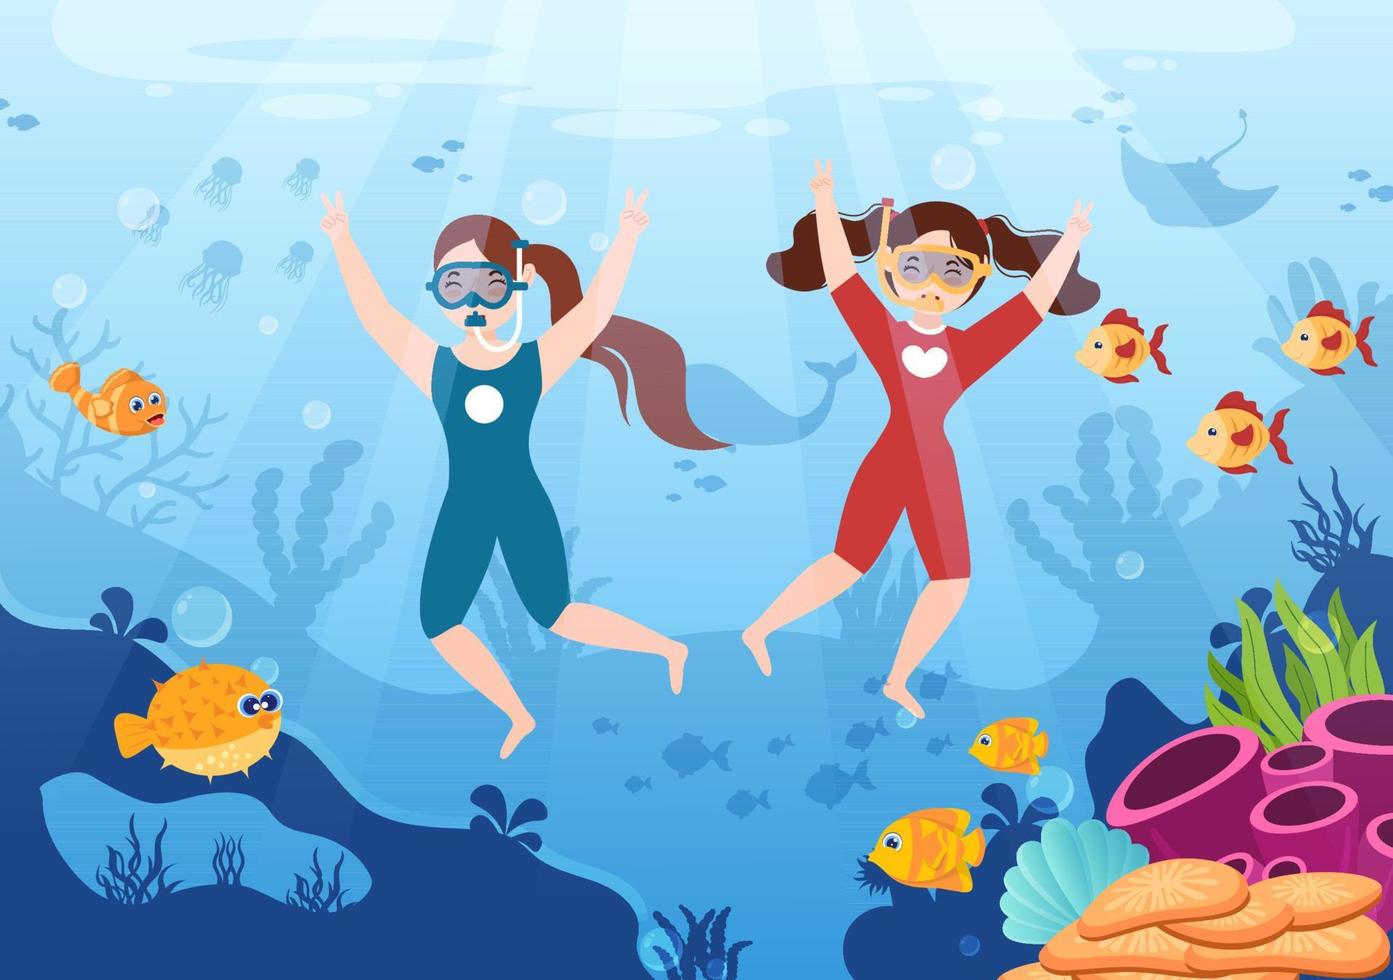 niños buceando con natación submarina explorando el mar, arrecifes de coral o peces en el océano en ilustraciones planas de vectores de dibujos animados